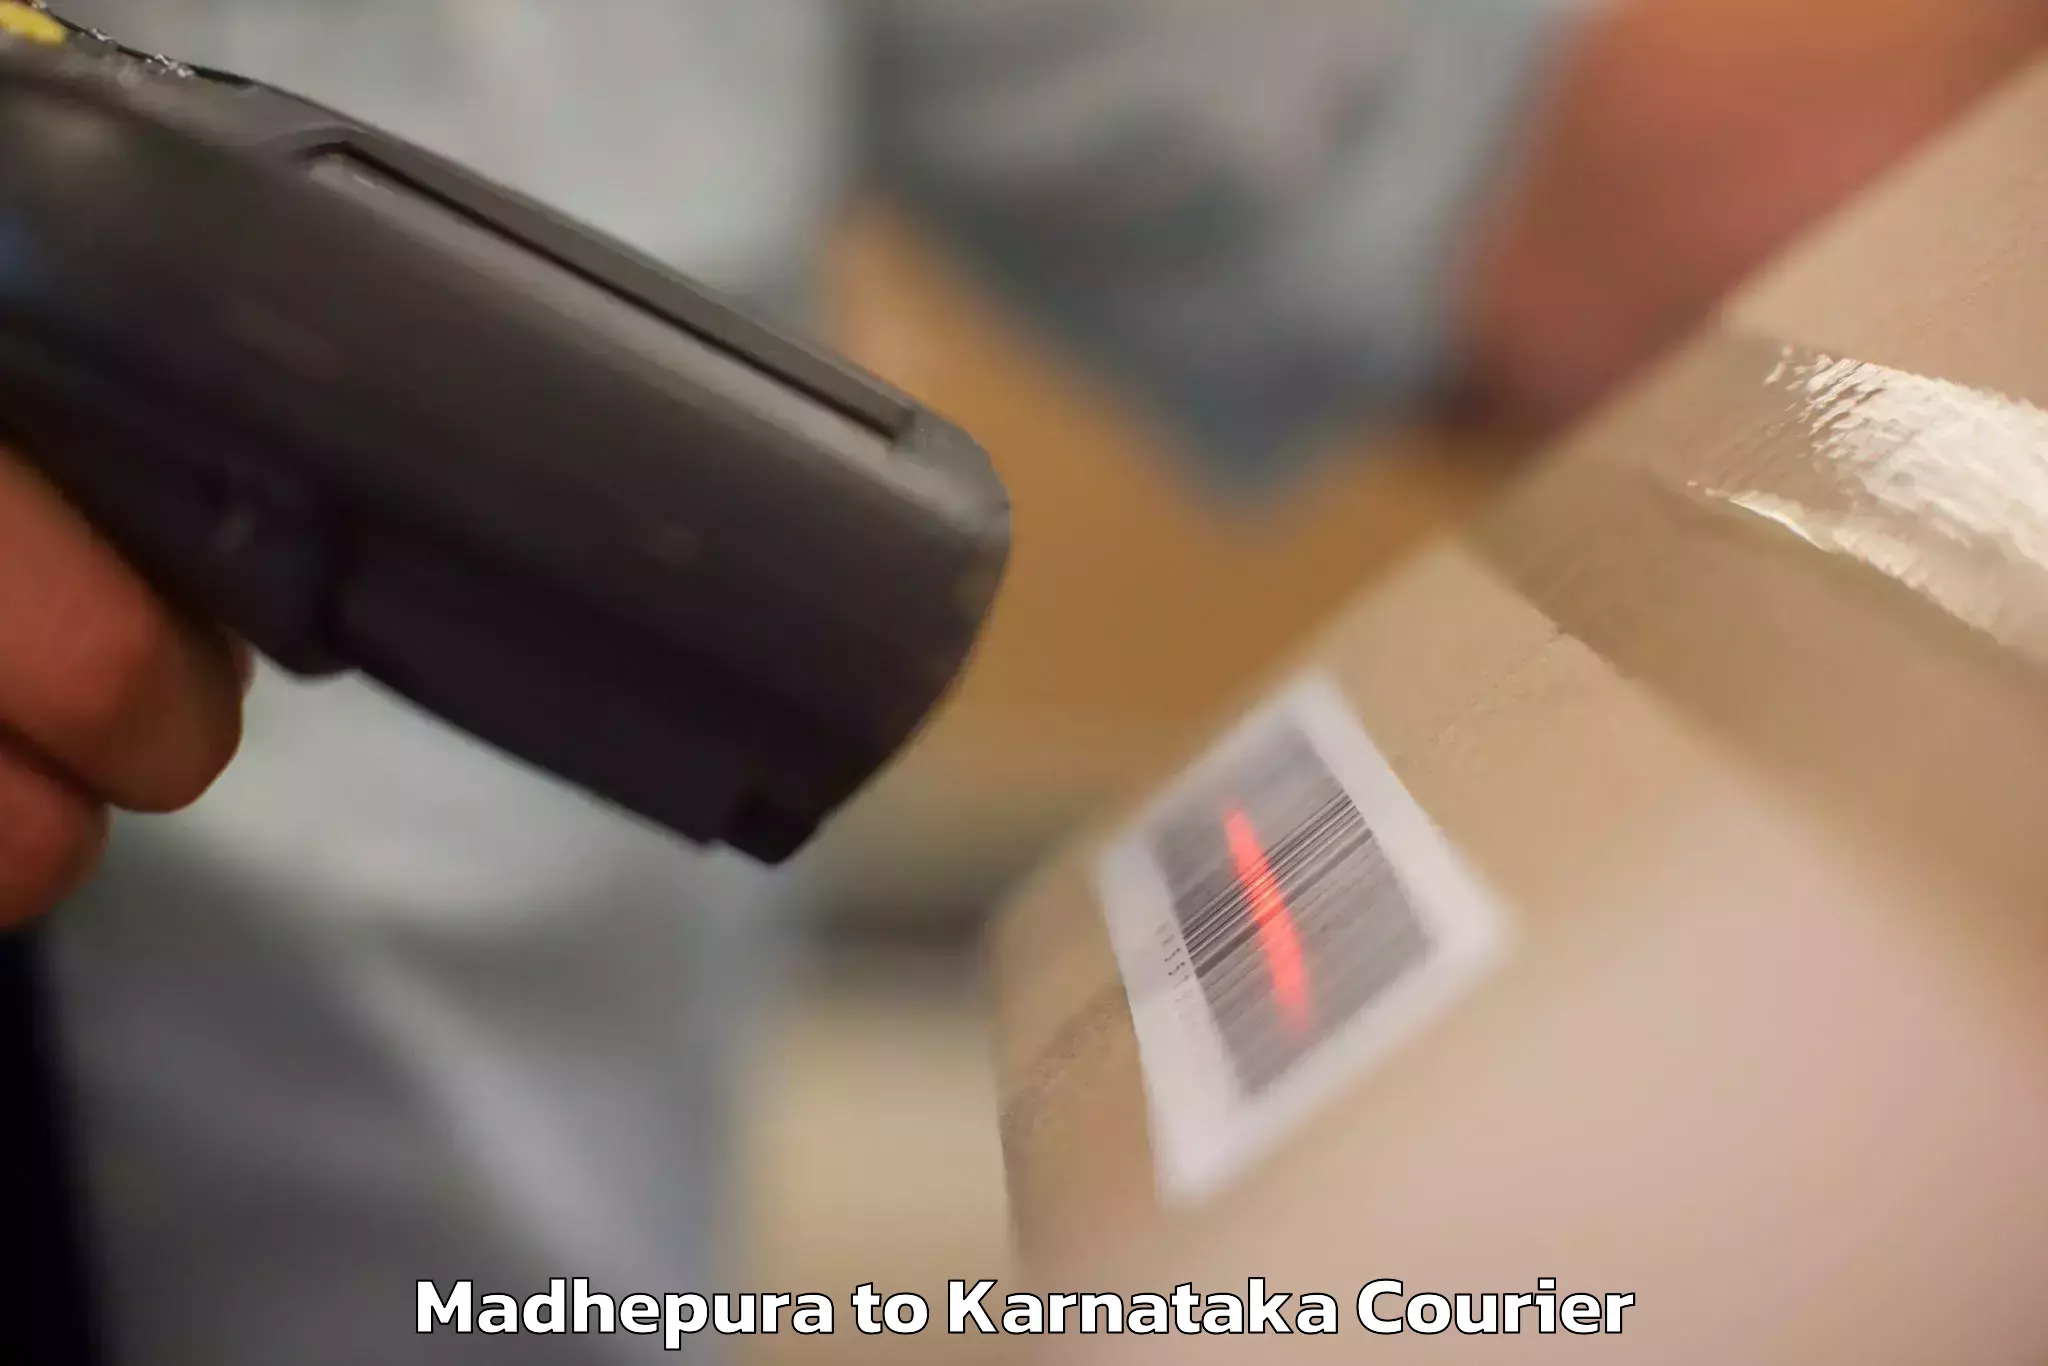 Luggage forwarding service Madhepura to Mysore University